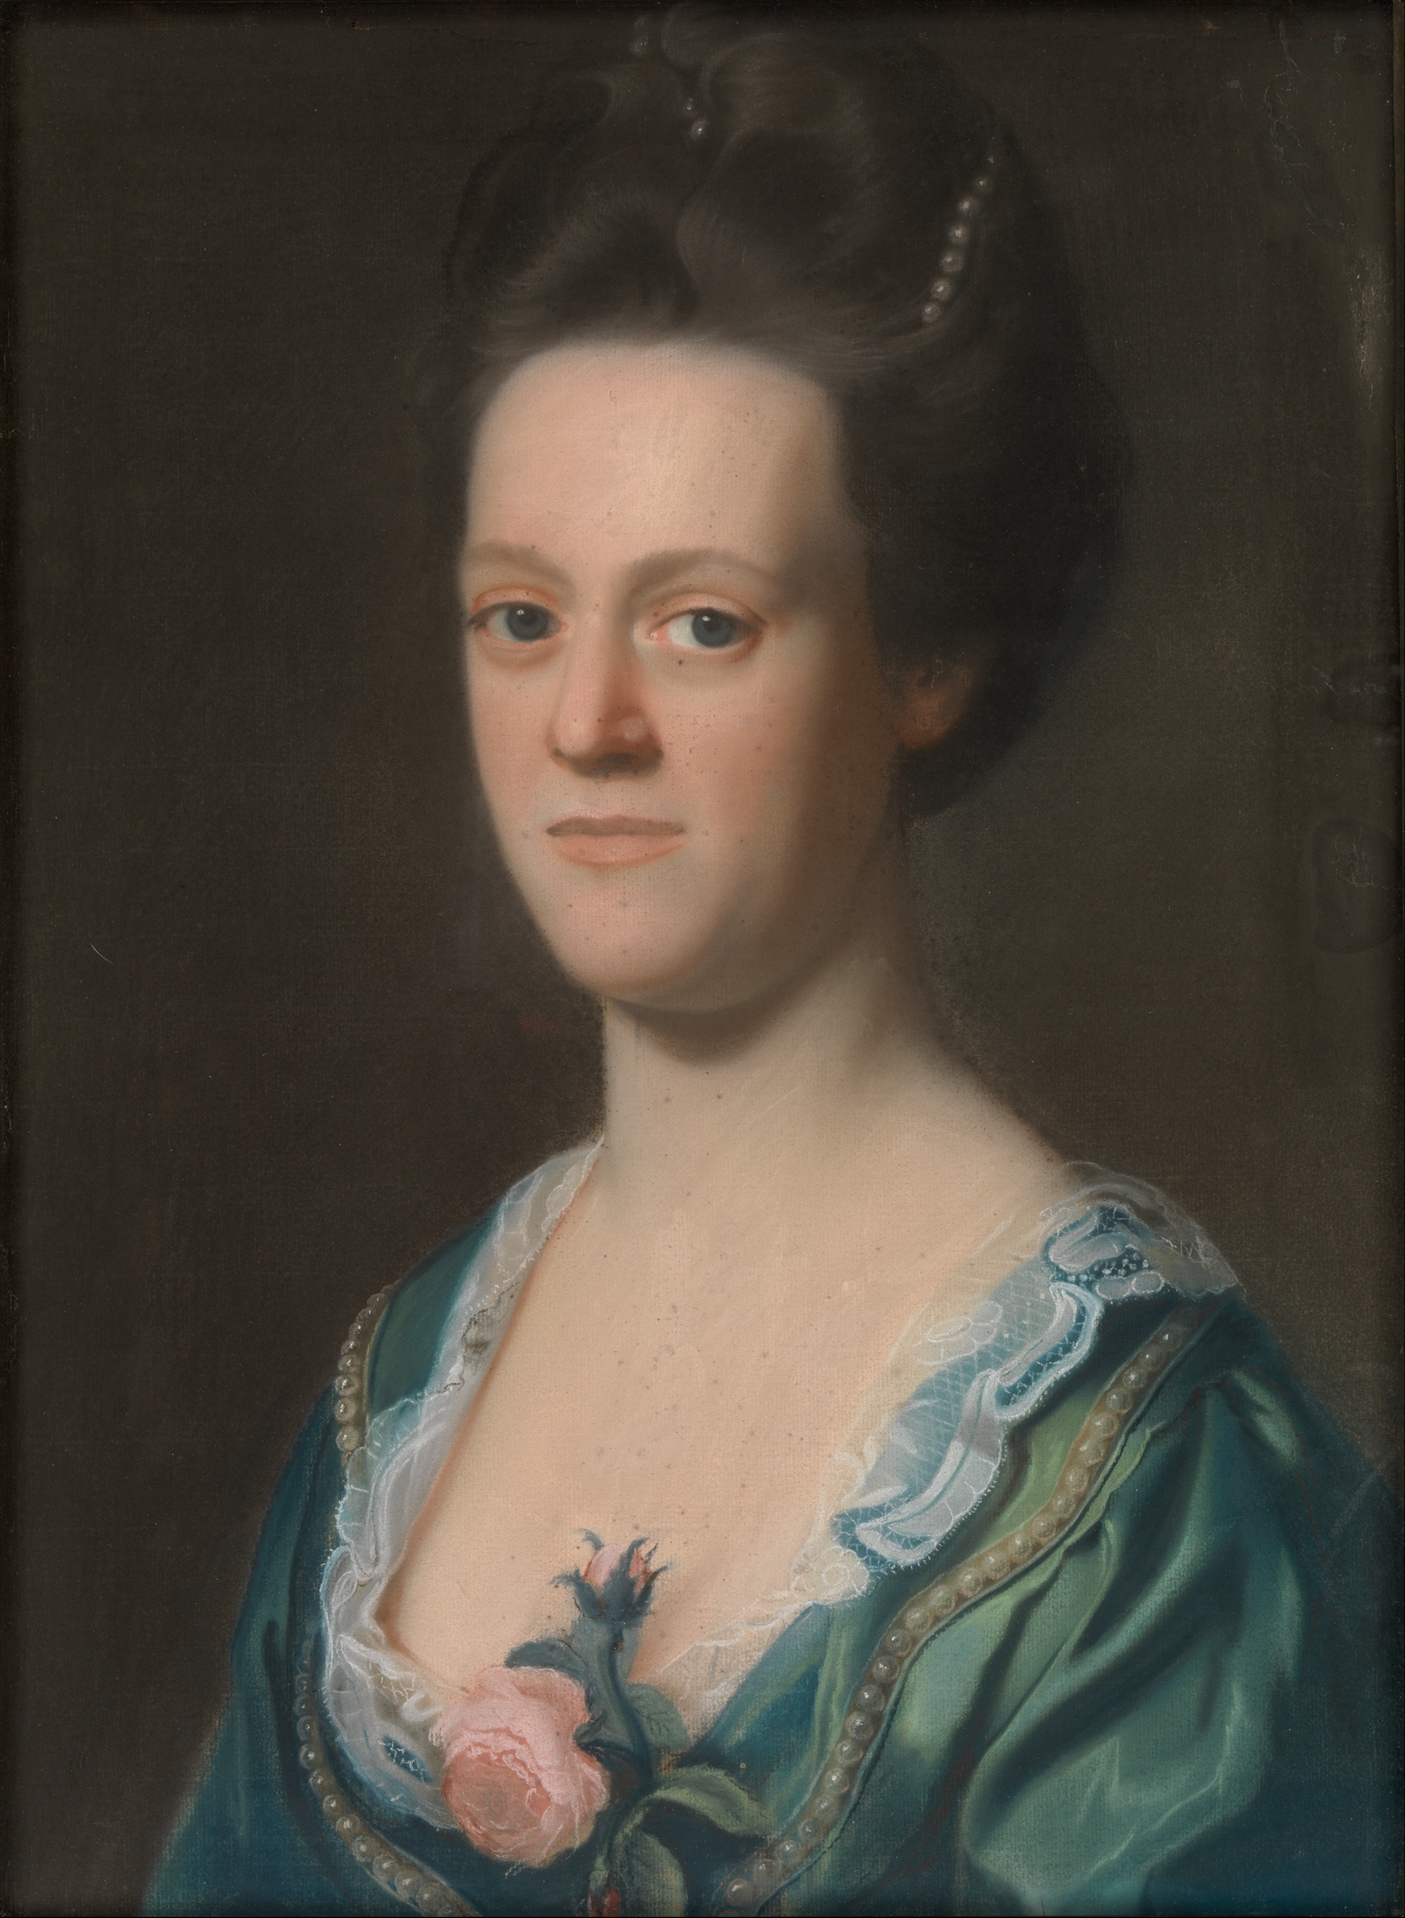 Elizabeth Green (Mrs. Ebenezer Storer II) by John Singleton Copley - ca. 1767 - 60.6 x 44.8 cm Metropolitan Museum of Art